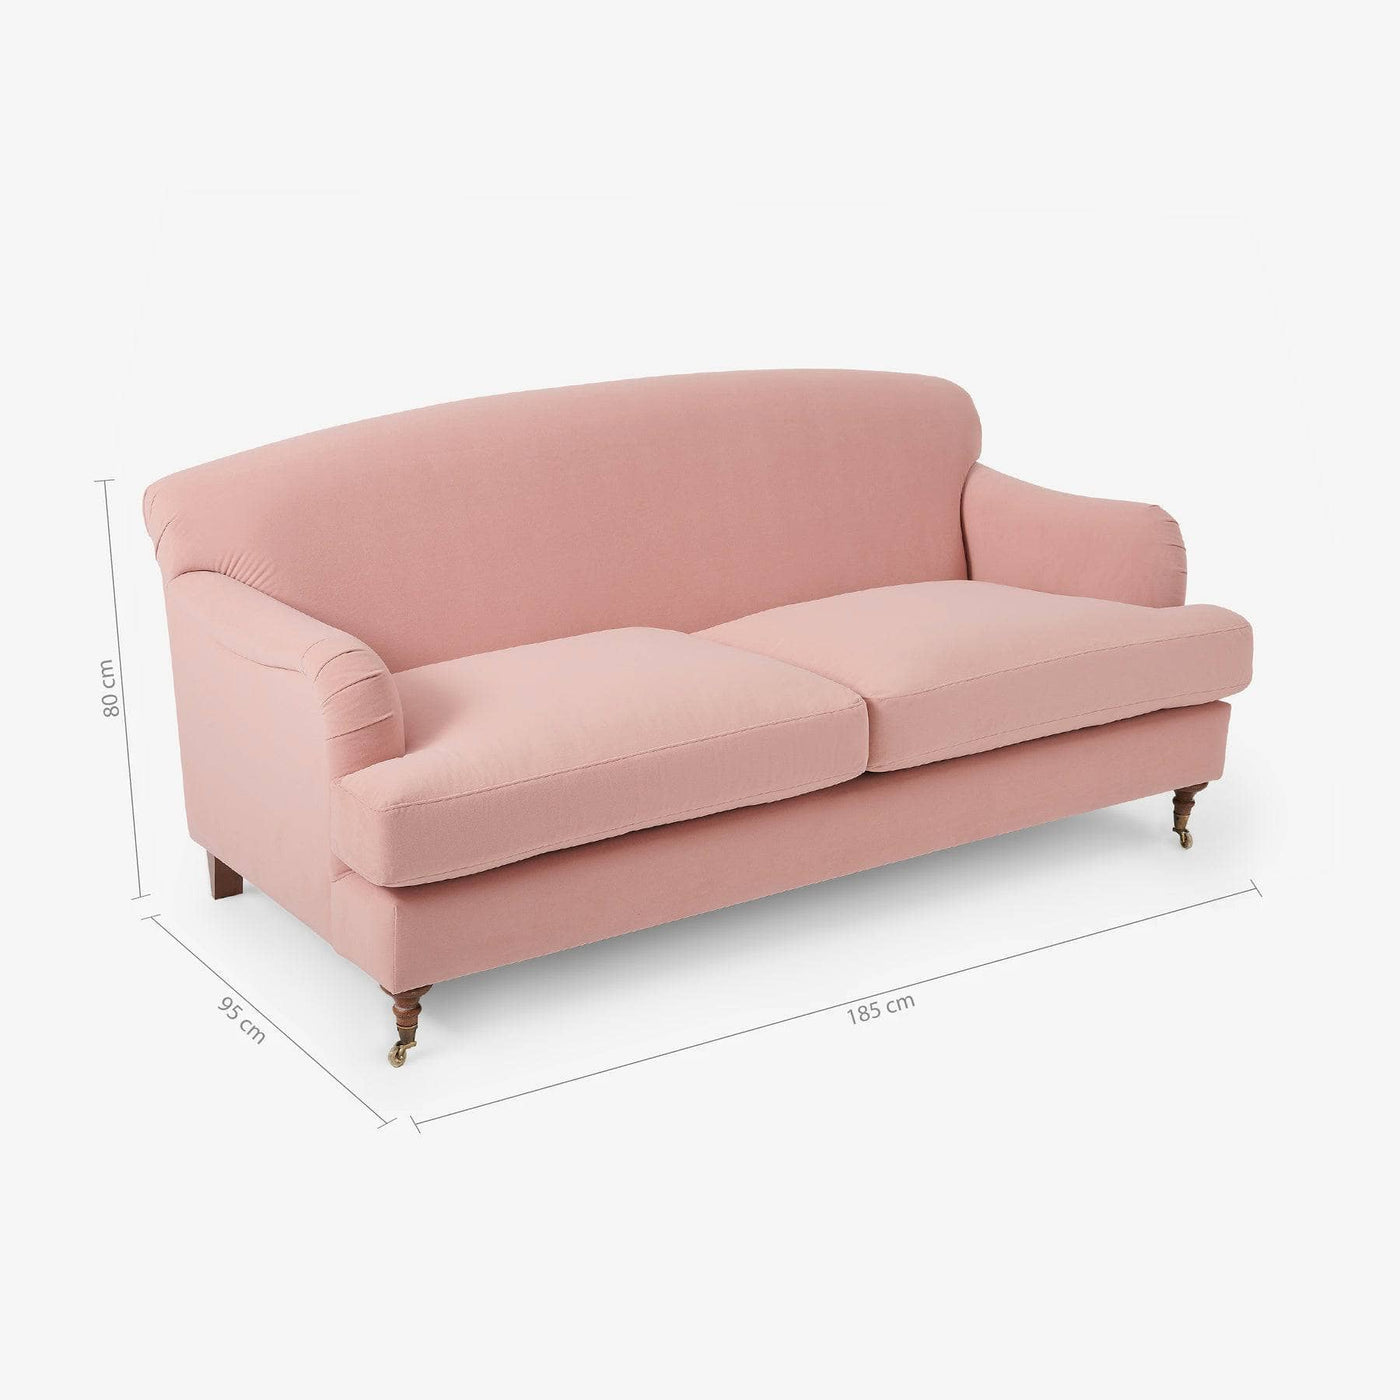 Emin 2 Seater Velvet Sofa, Blush Pink 2 Seater Sofas sazy.com